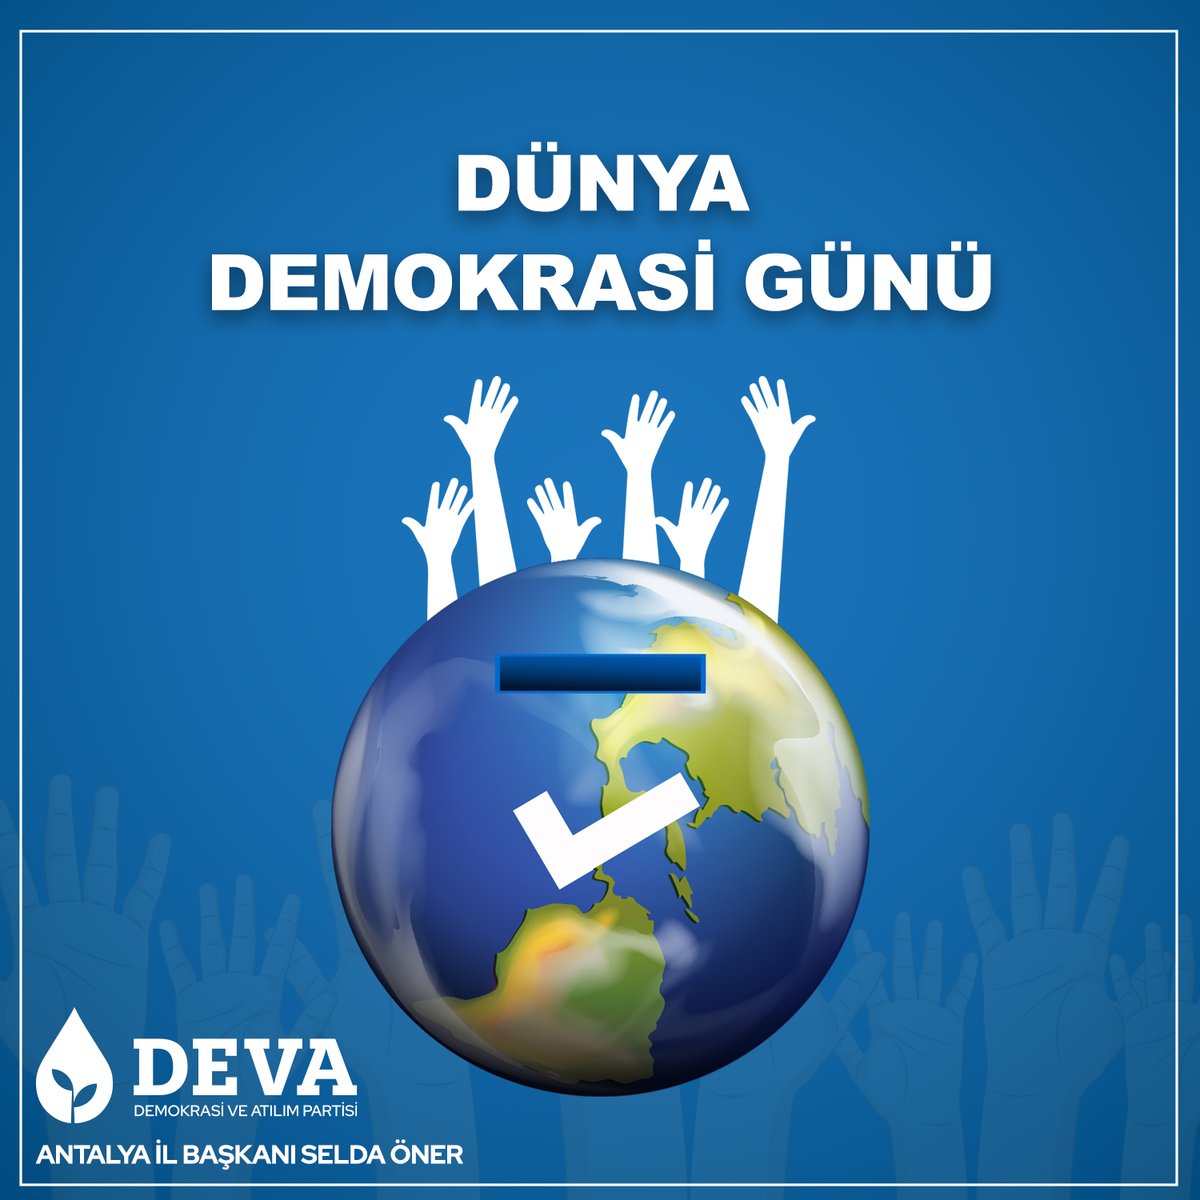 Dünya Demokrasi Günü Kutlu Olsun..

#demokrasigünü #dünyademokrasigünü #worlddemocracyday #DevaPartisi #DevaHazır